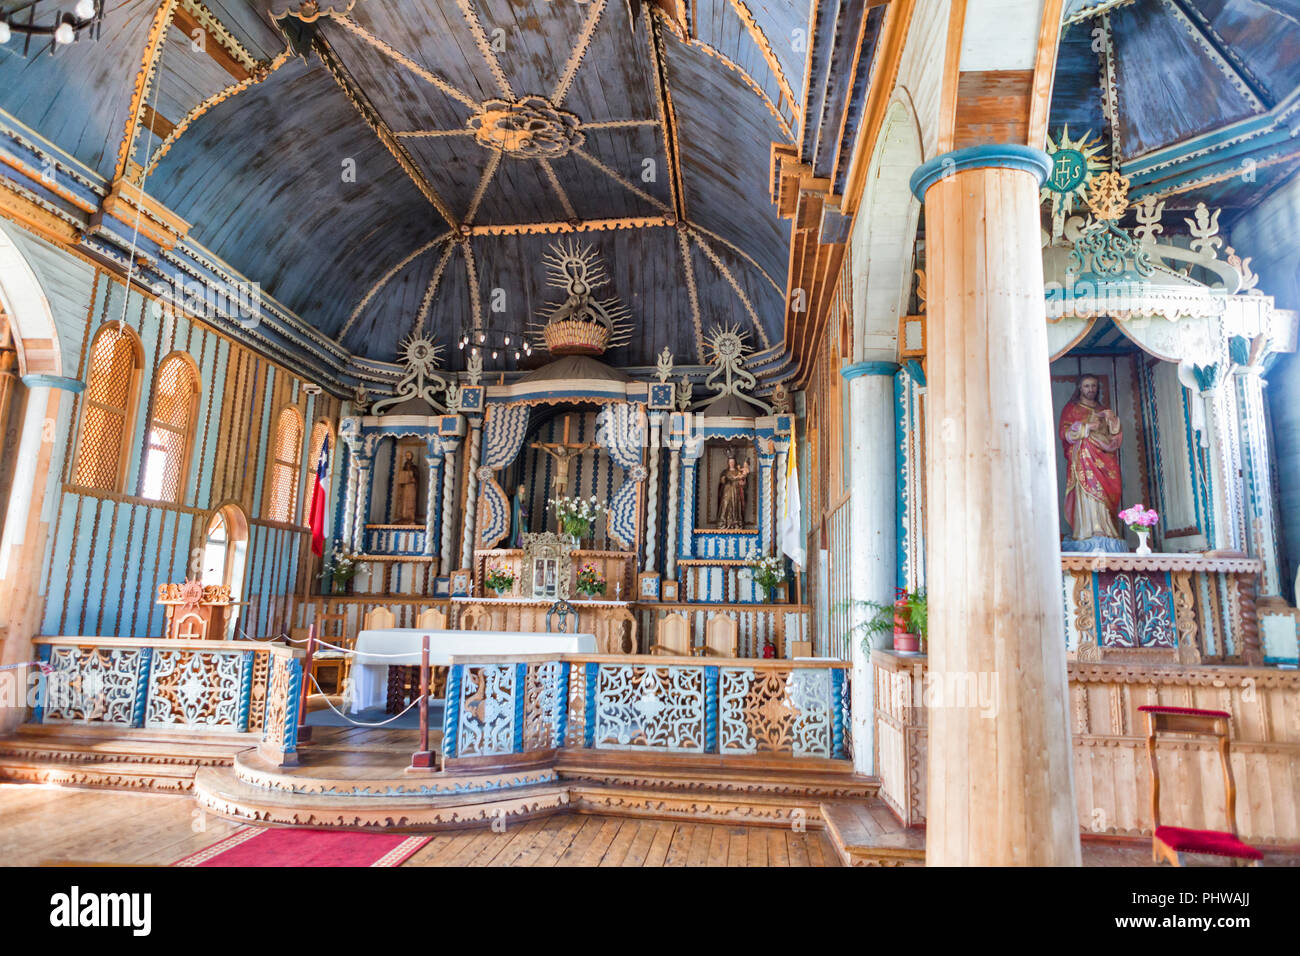 Wooden church of Santa Maria de Loreto interior, Achao island near Chiloe, Los Lagos region, Chile Stock Photo